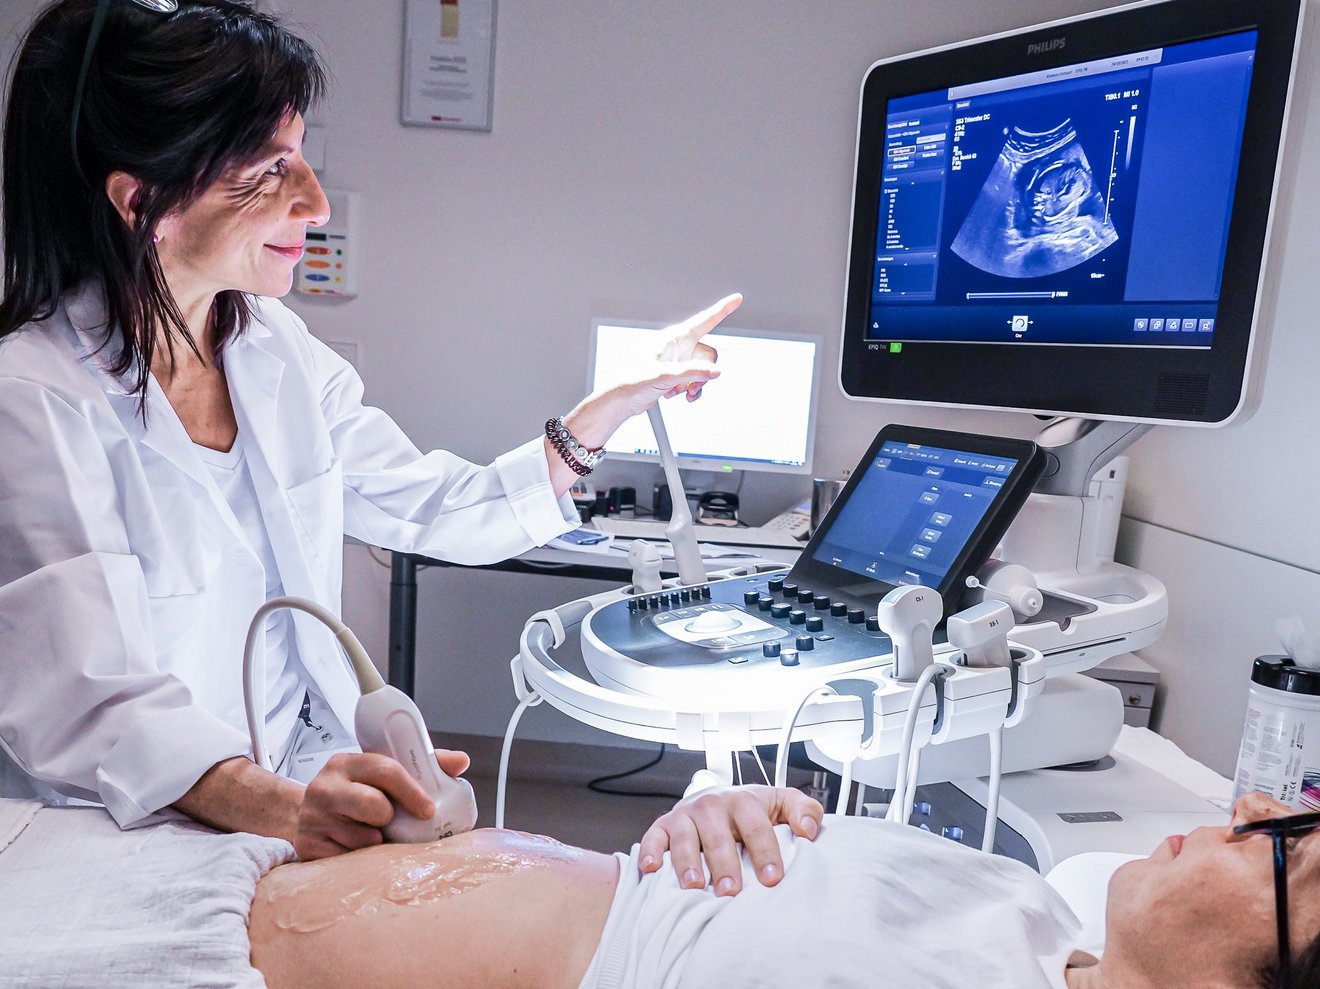 Ultraschalluntersuchung einer Schwangeren